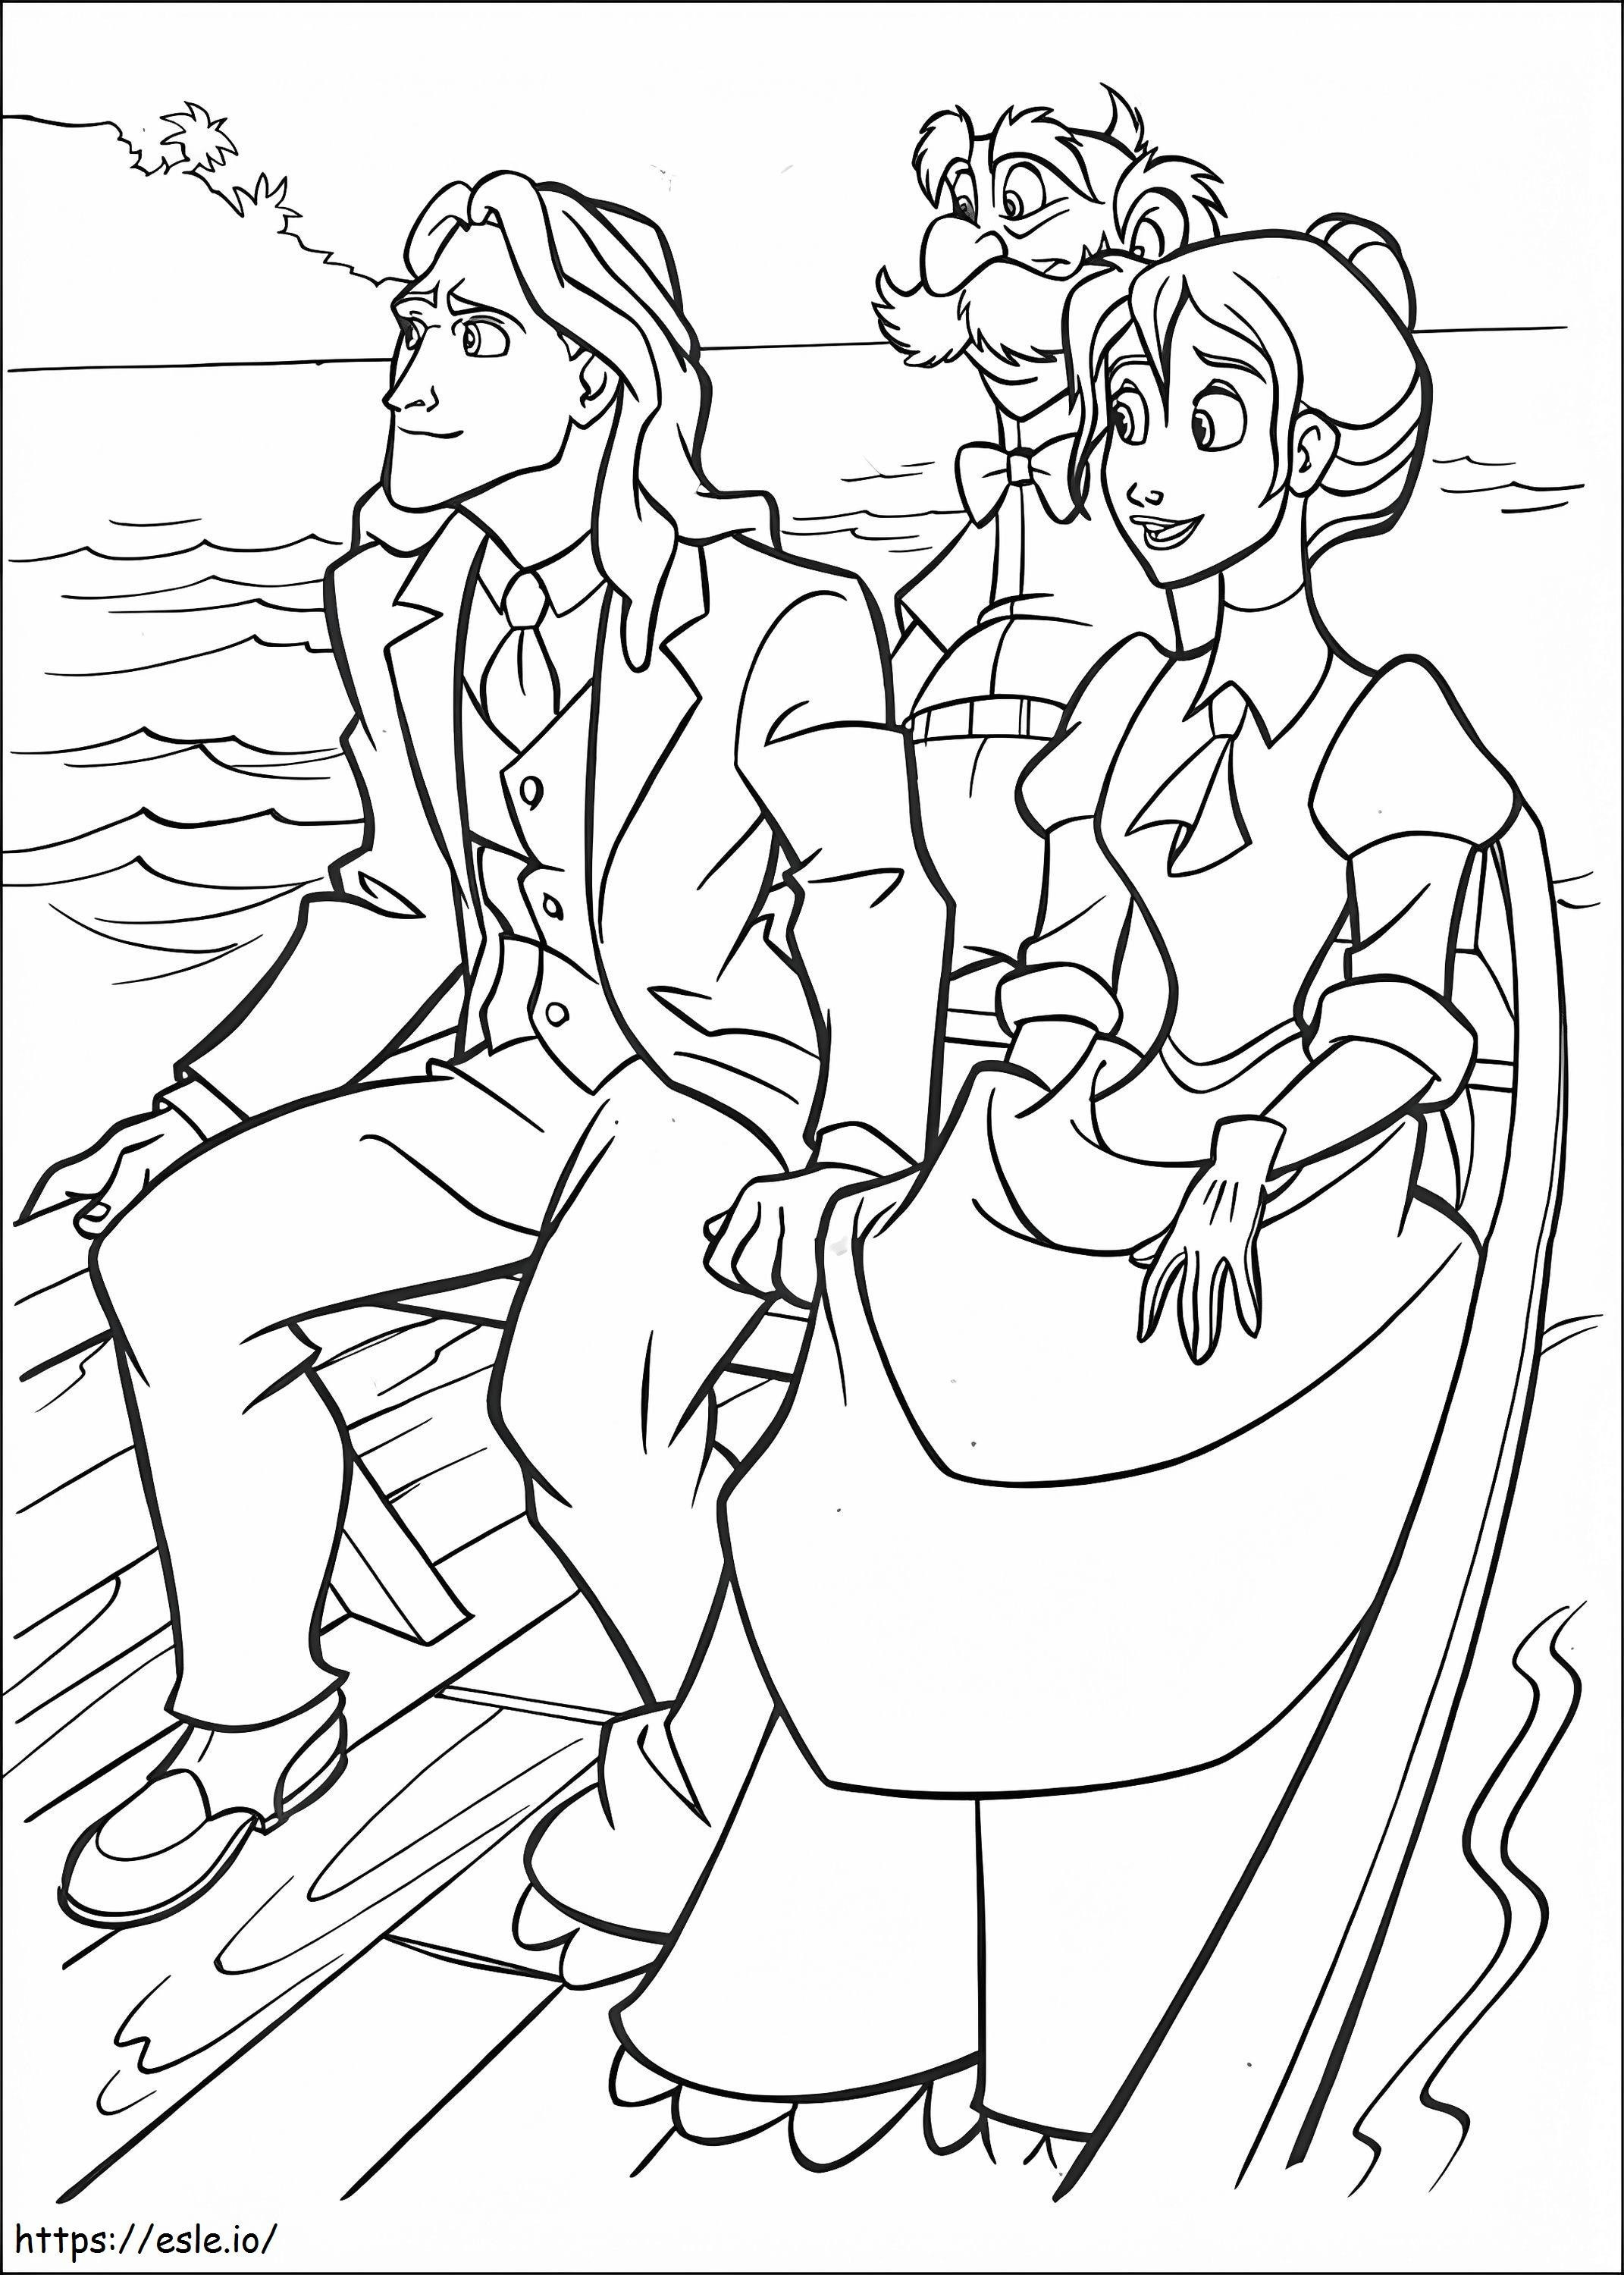 Tarzan i Jane Profesor Archimedes Q. Porter na łodzi kolorowanka